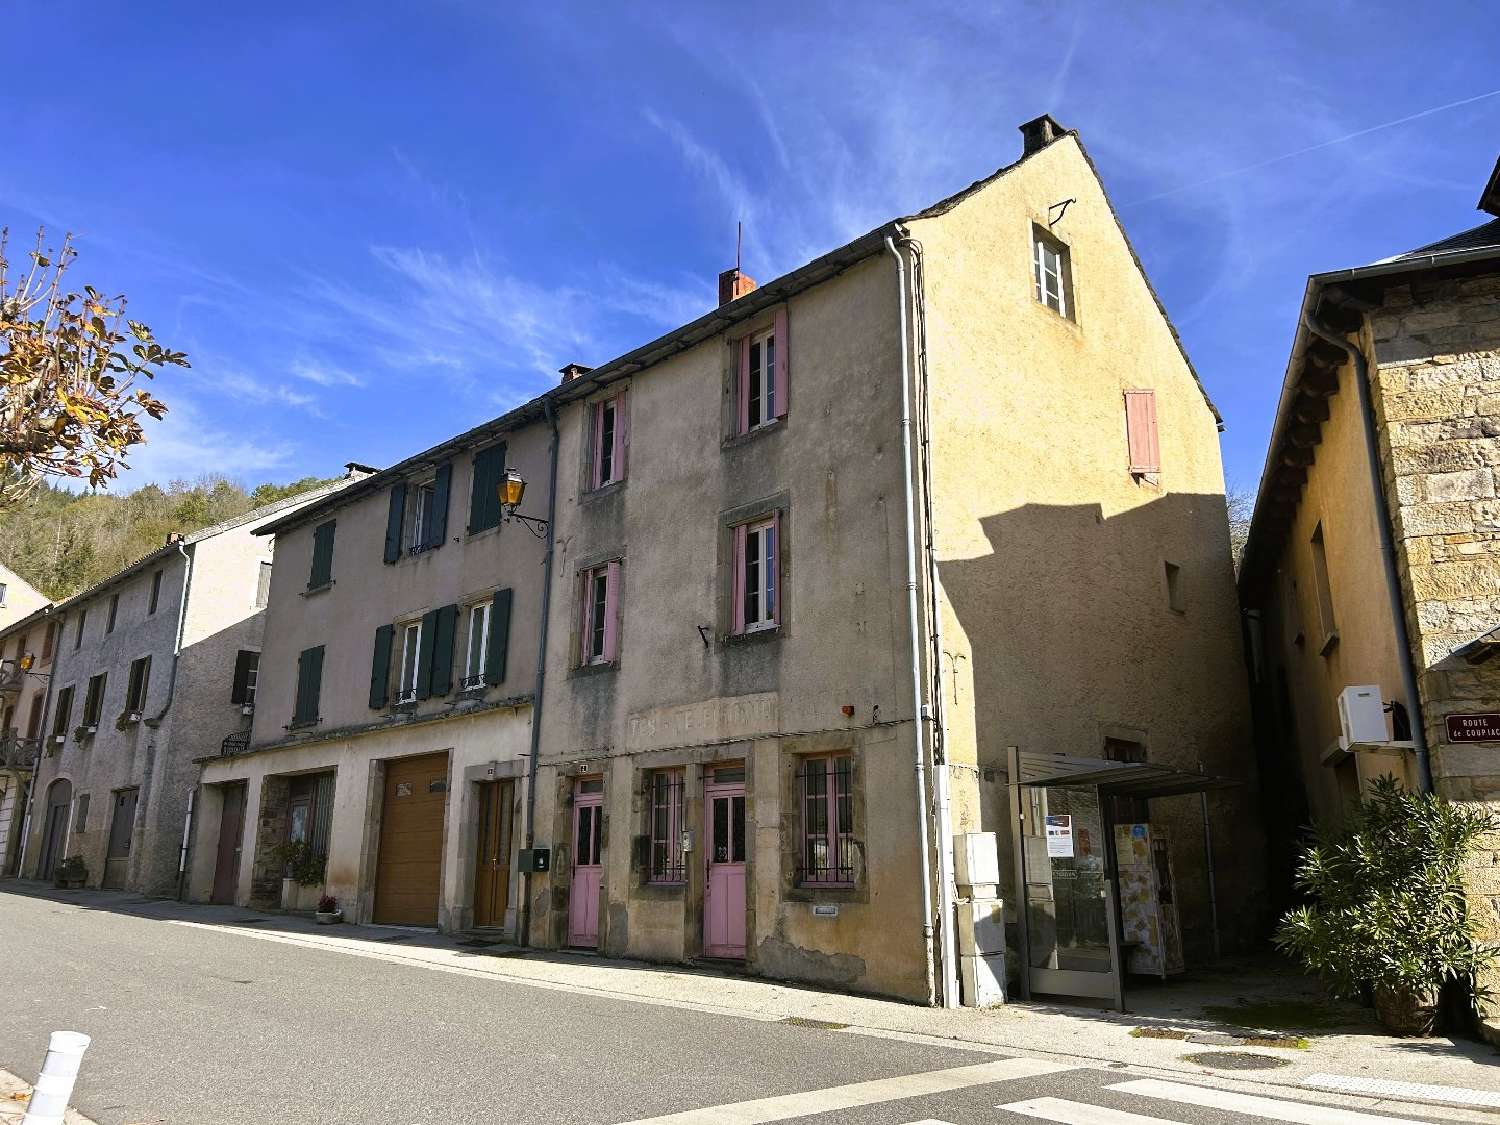  for sale house Plaisance Aveyron 2